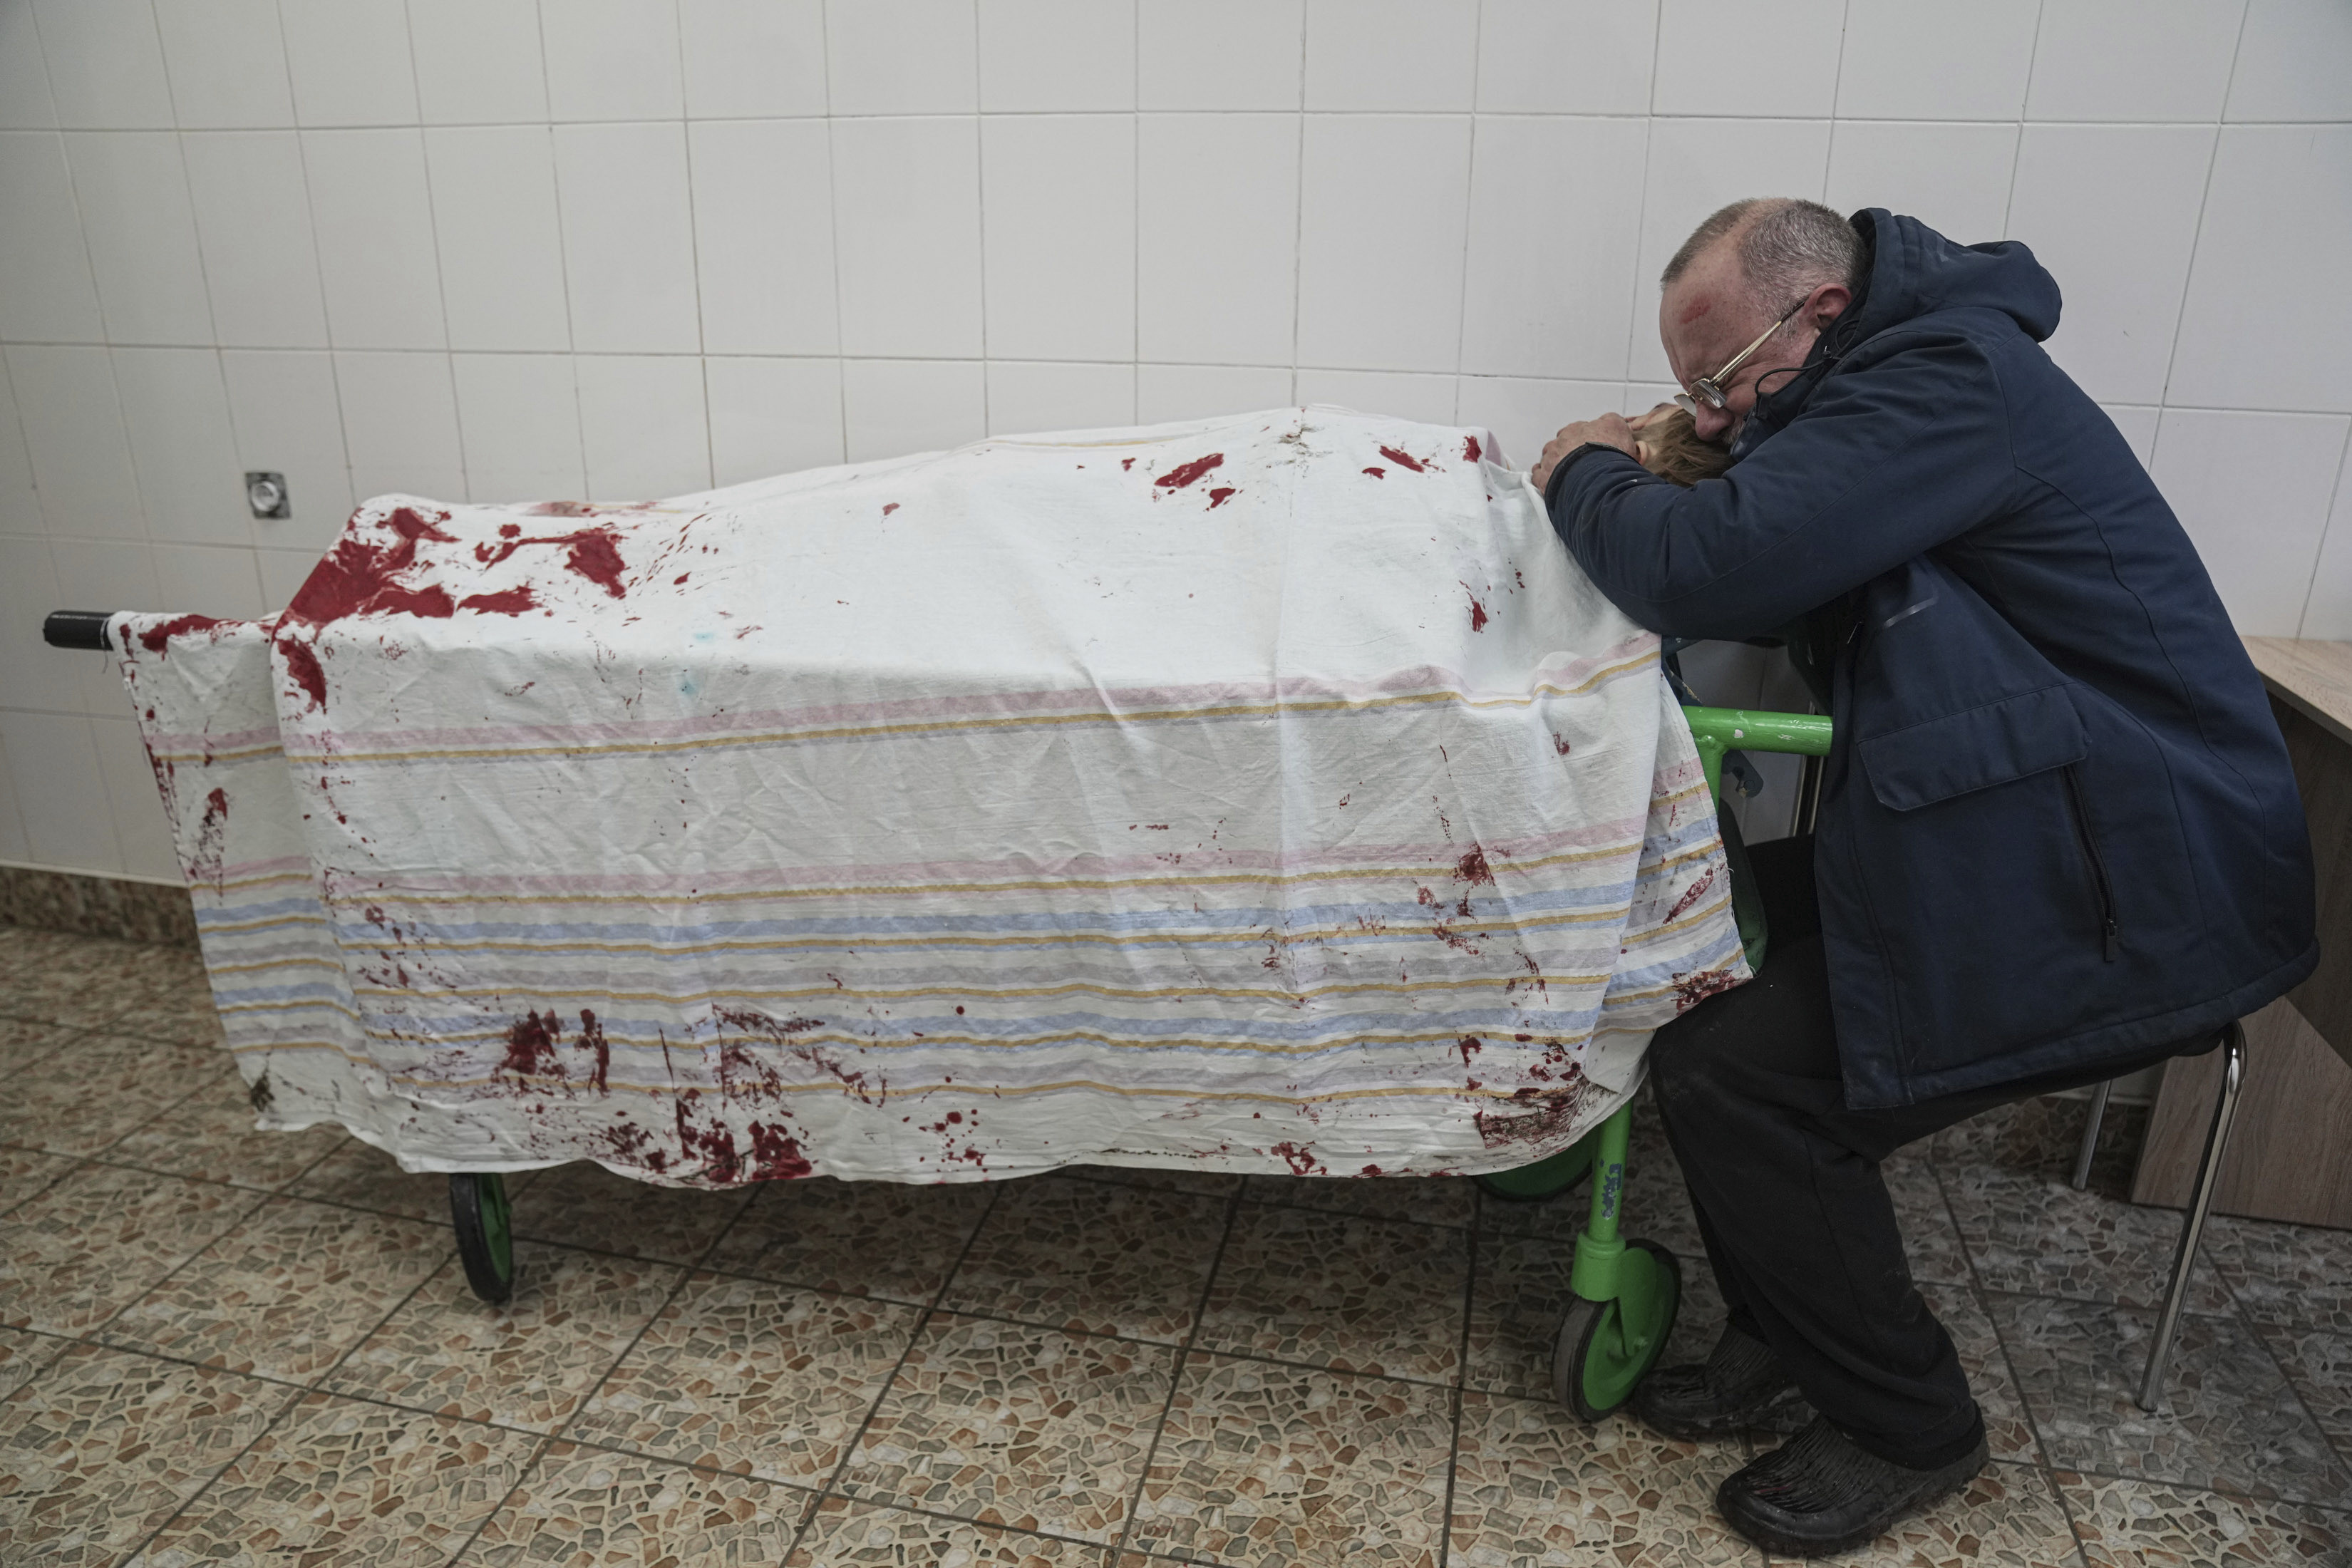 Φωτογραφία του Assosiated Press: Η φρίκη του πολέμου της Ουκρανίας σε μια εικόνα